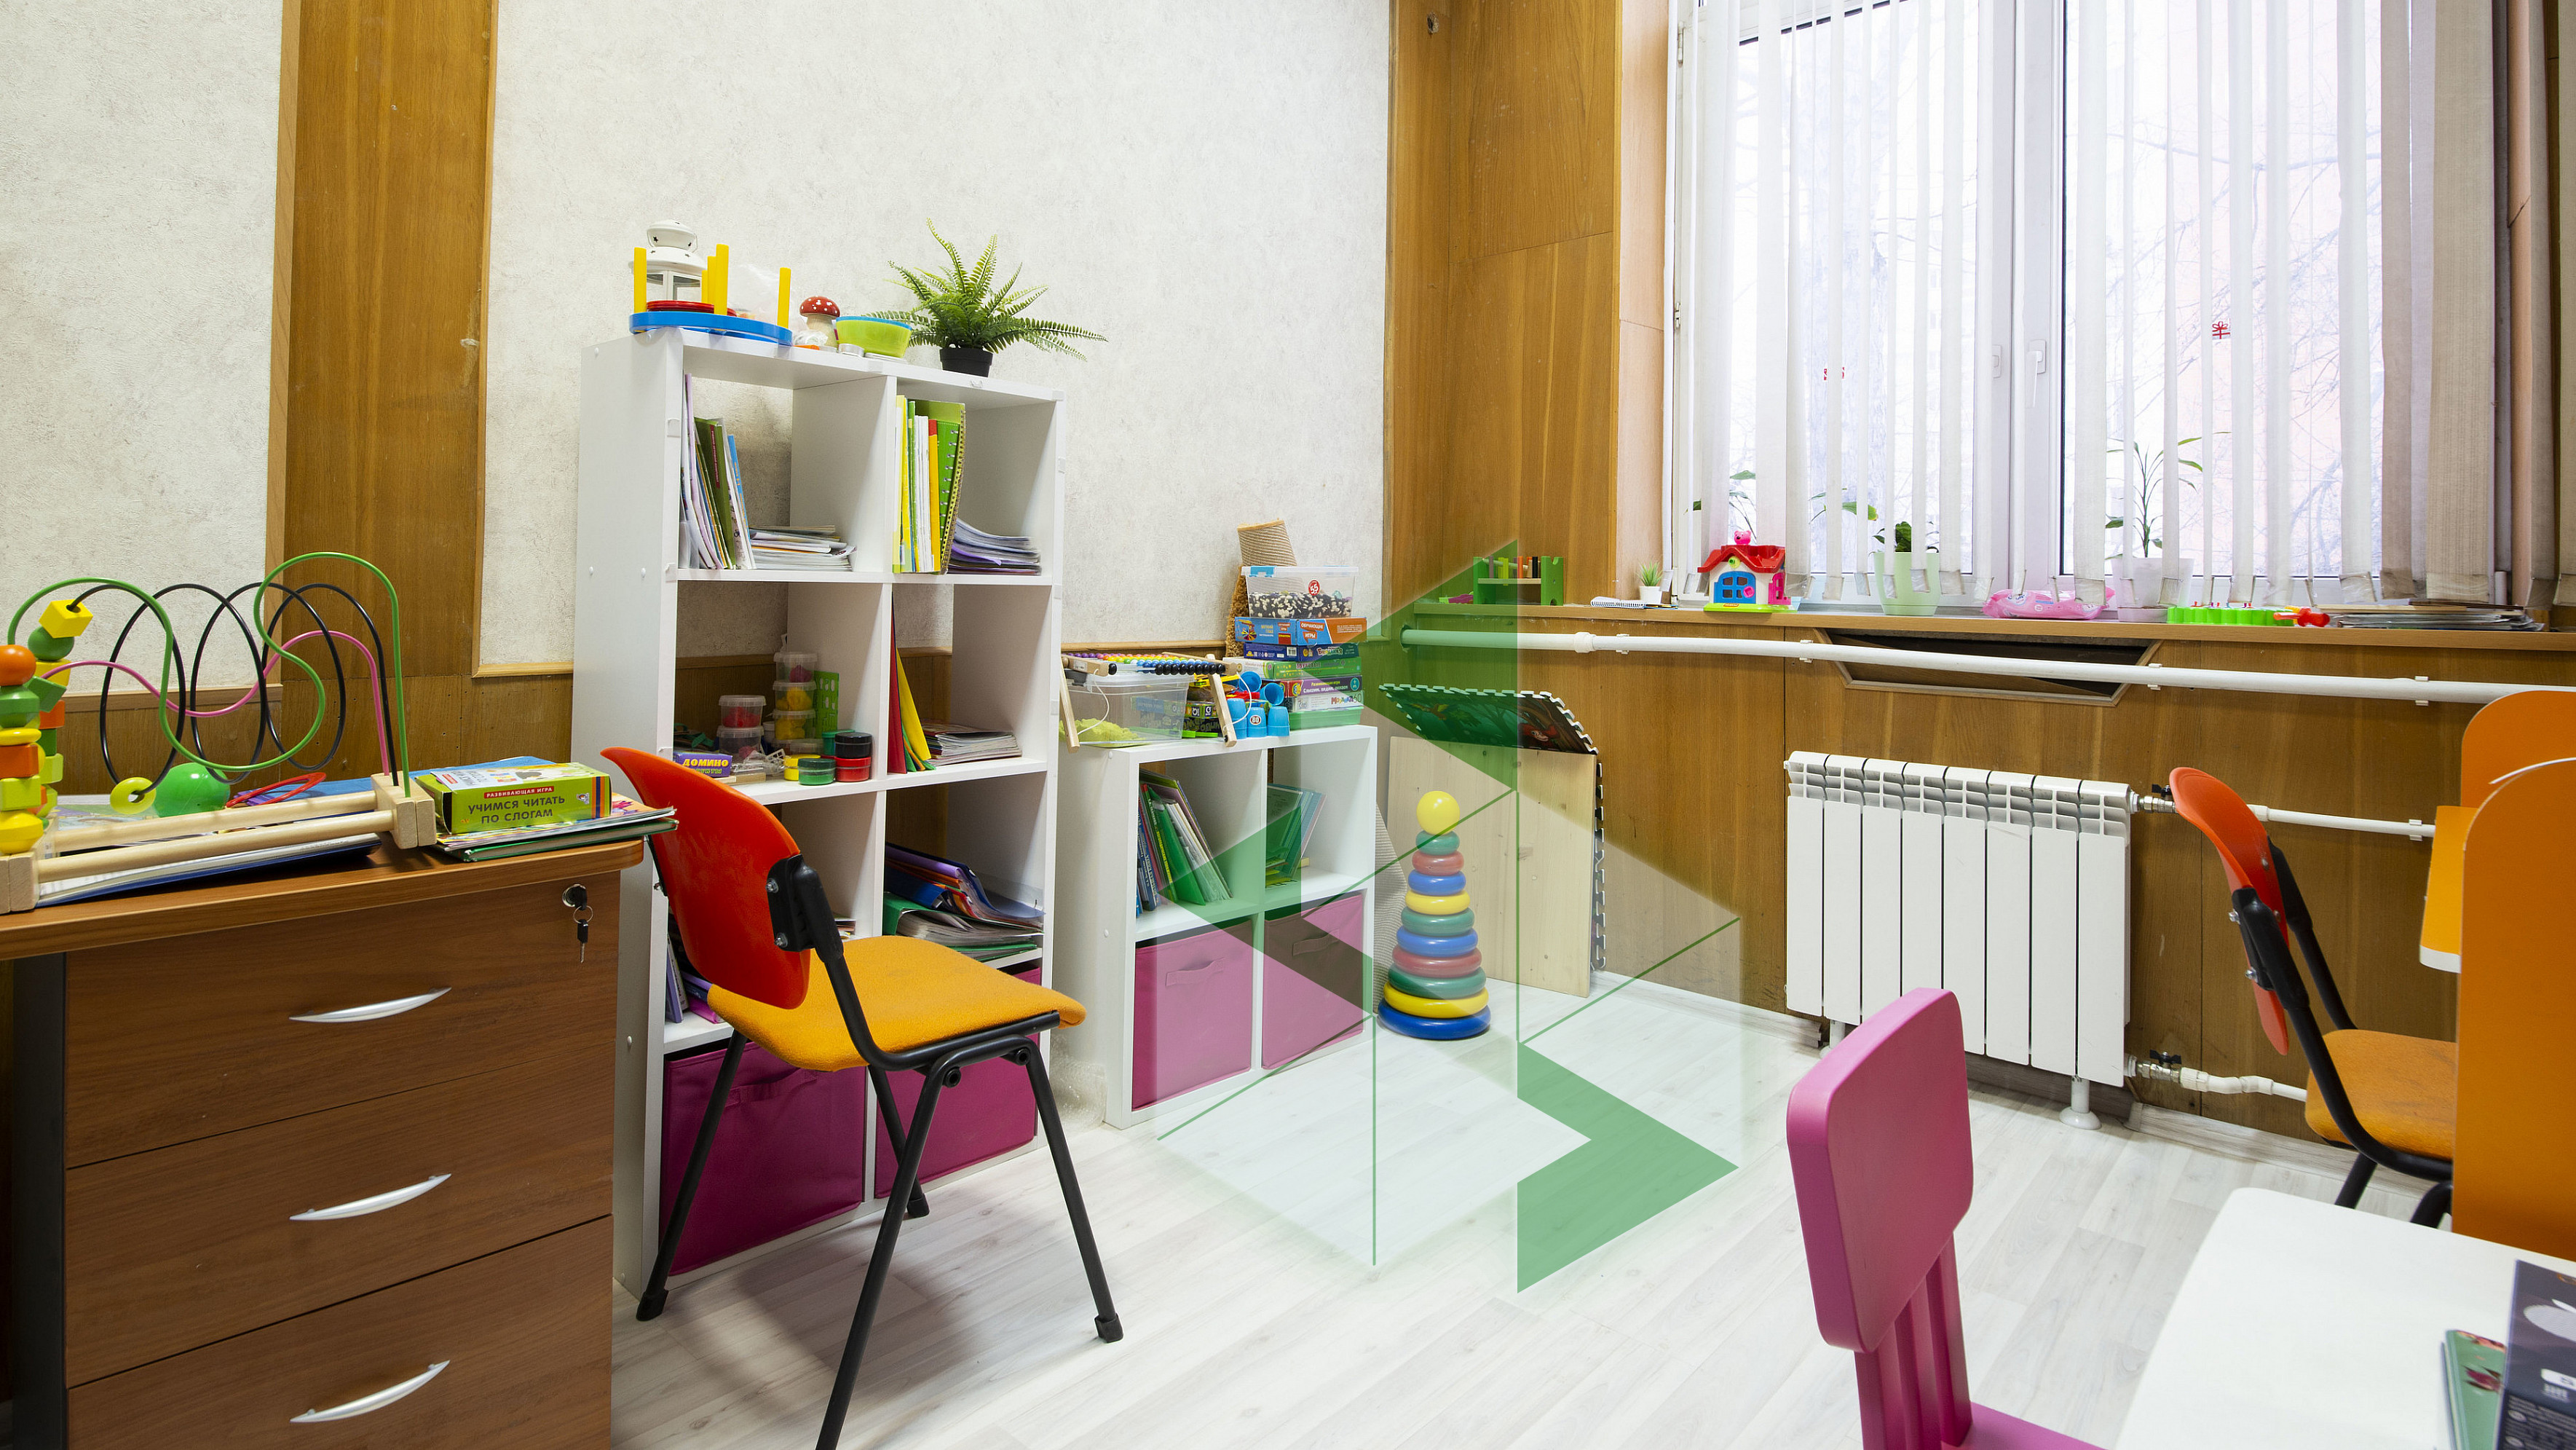 Логопедический кабинет в школе. Мебель для кабинета психолога в детском саду. Мебель для кабинета логопеда в детском саду. Детский кабинет логопеда. Шкафы для кабинета психолога в детский сад.